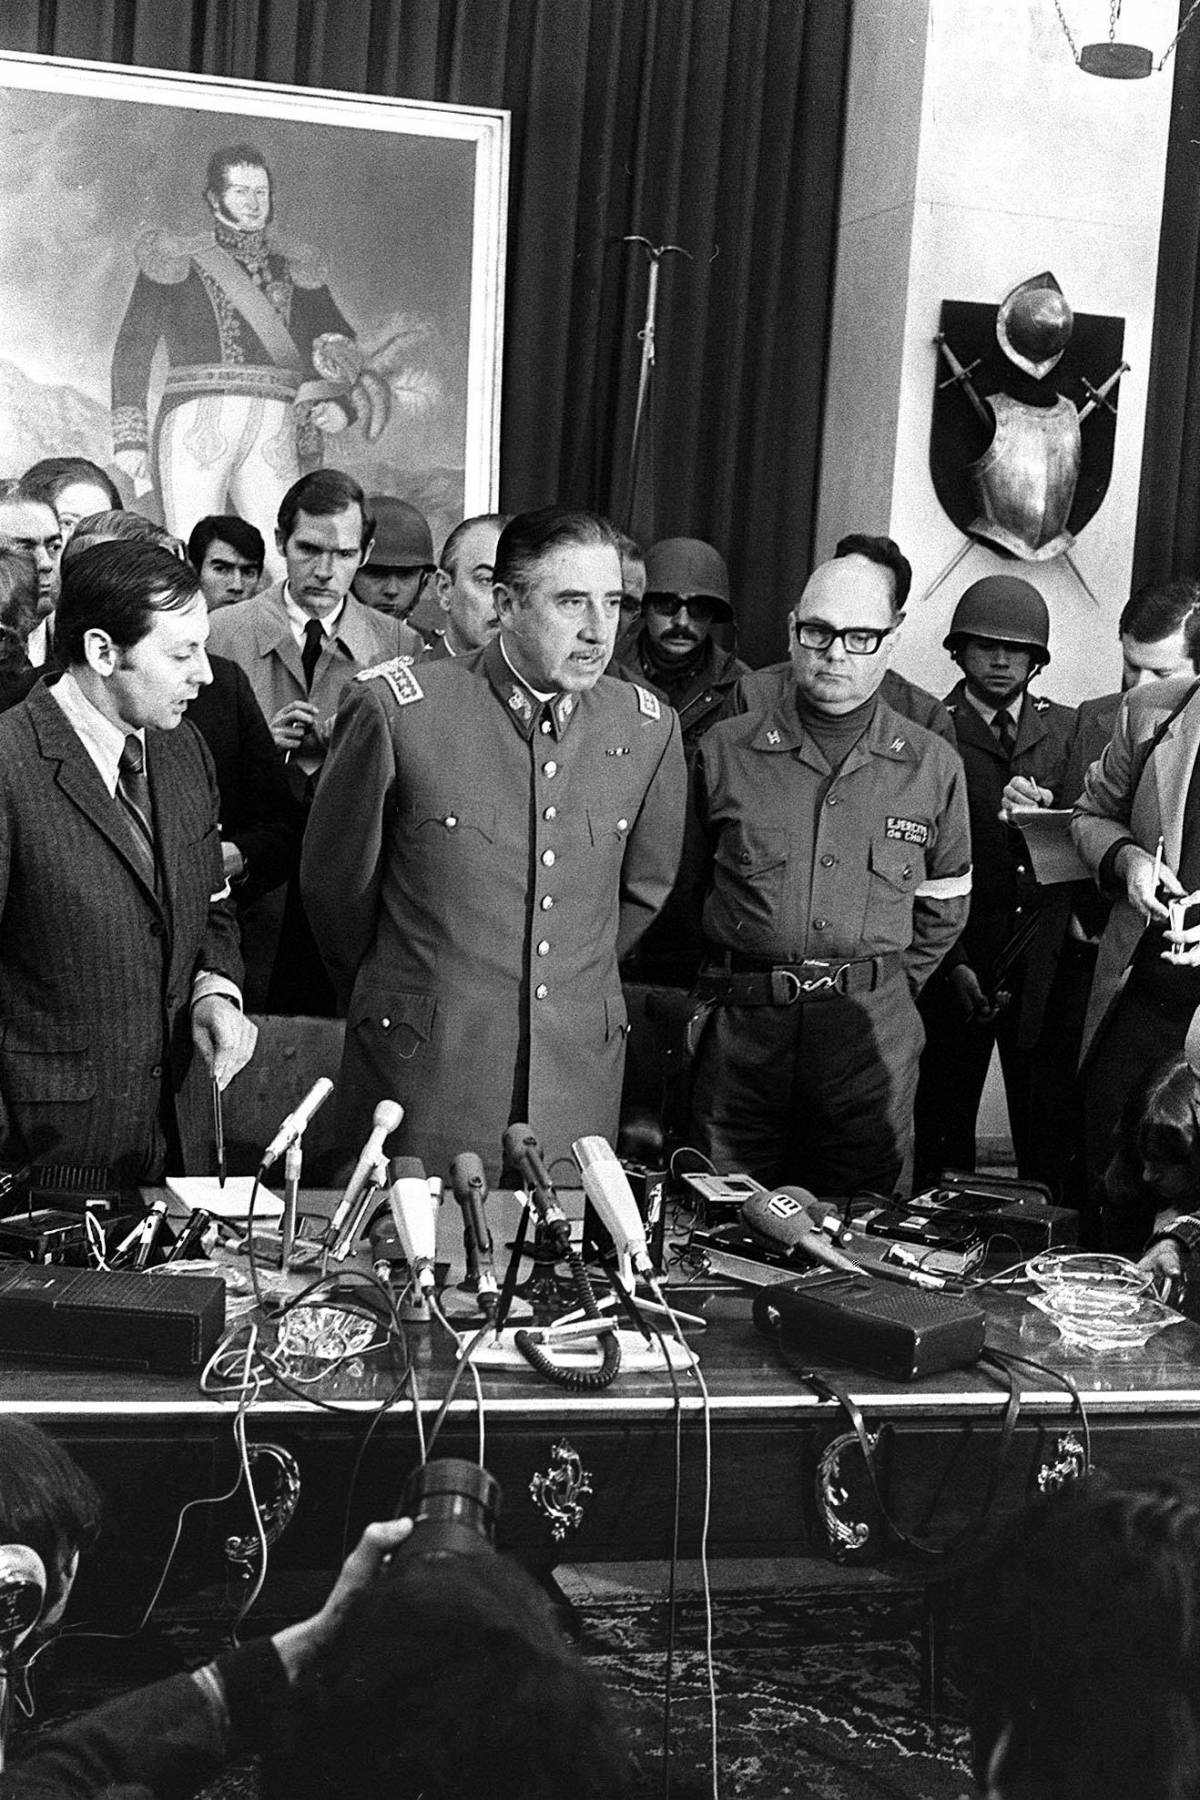 La gaffe della grillina: il generale Pinochet diventa Pino Chet...